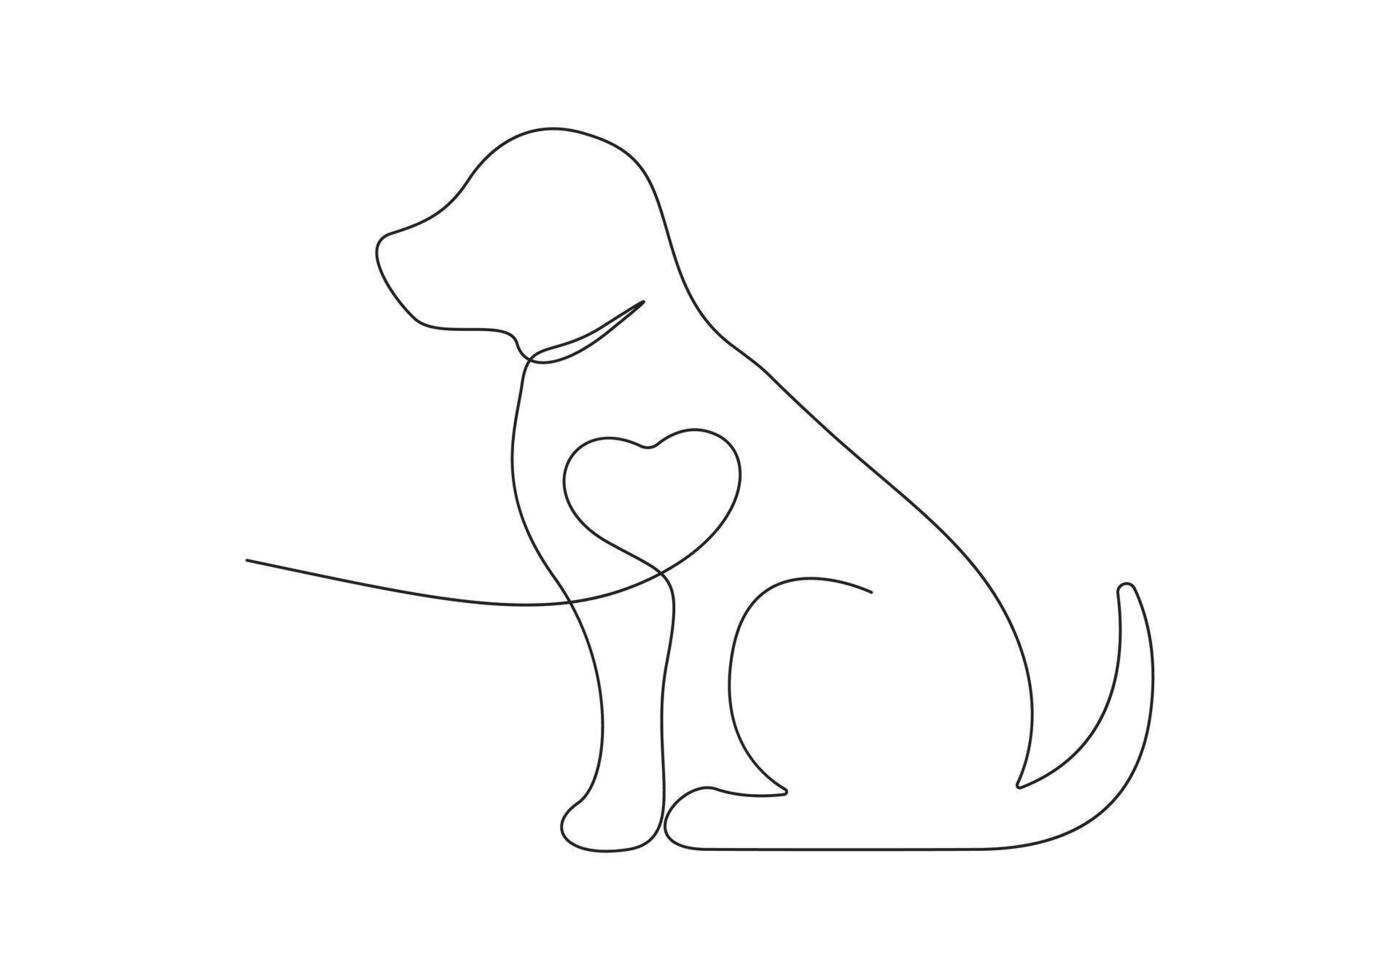 hond in een doorlopend lijn tekening pro illustratie vector